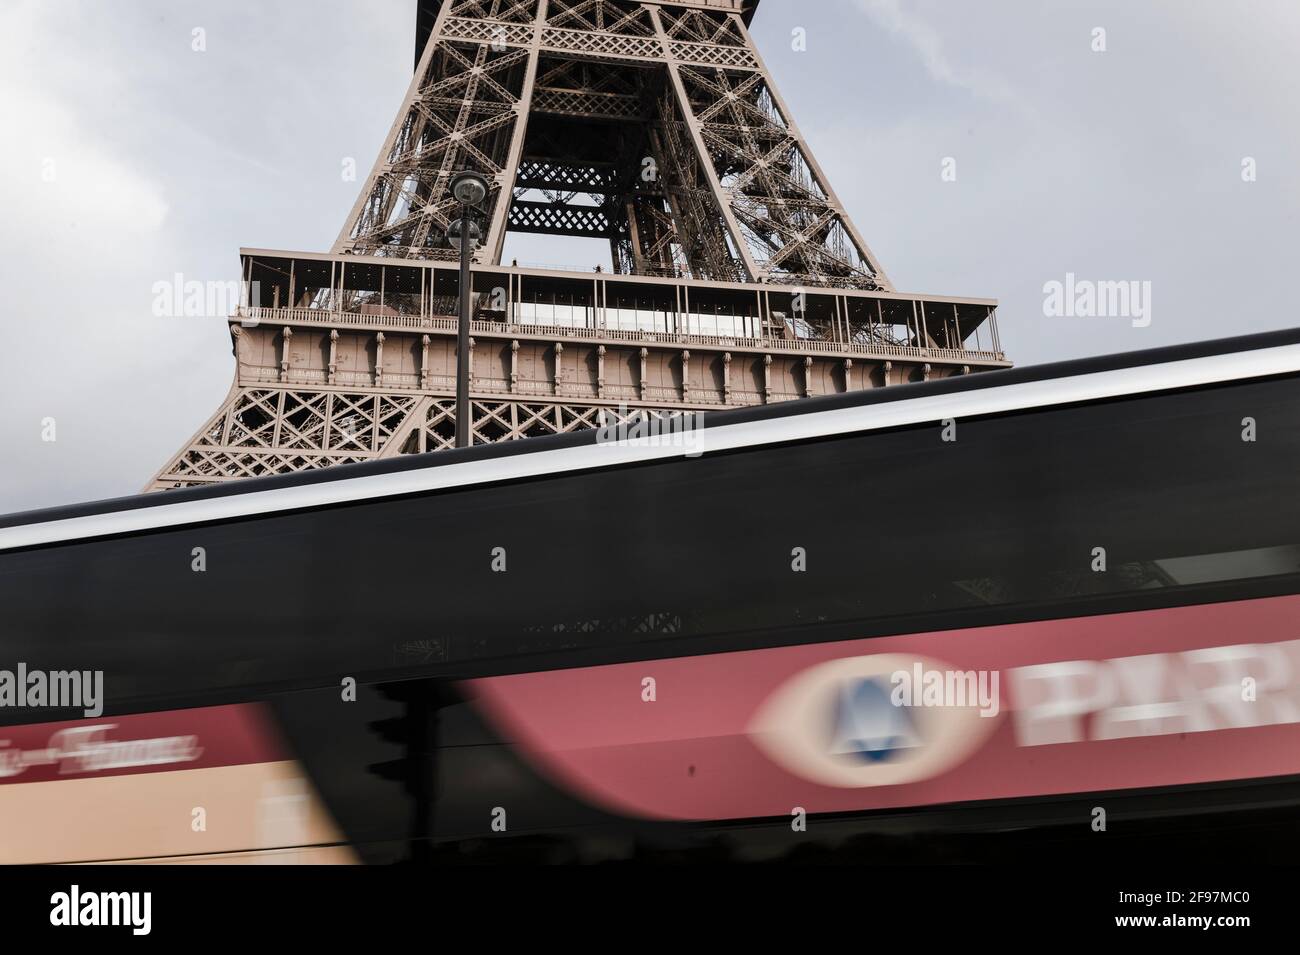 Torre Eiffel (tour Eiffel) a Parigi, Francia - nascosta dietro un pullman che viaggia. La Torre Eiffel è il monumento a pagamento più visitato al mondo; 6.91 milioni di persone la salirono nel 2015. Foto Stock